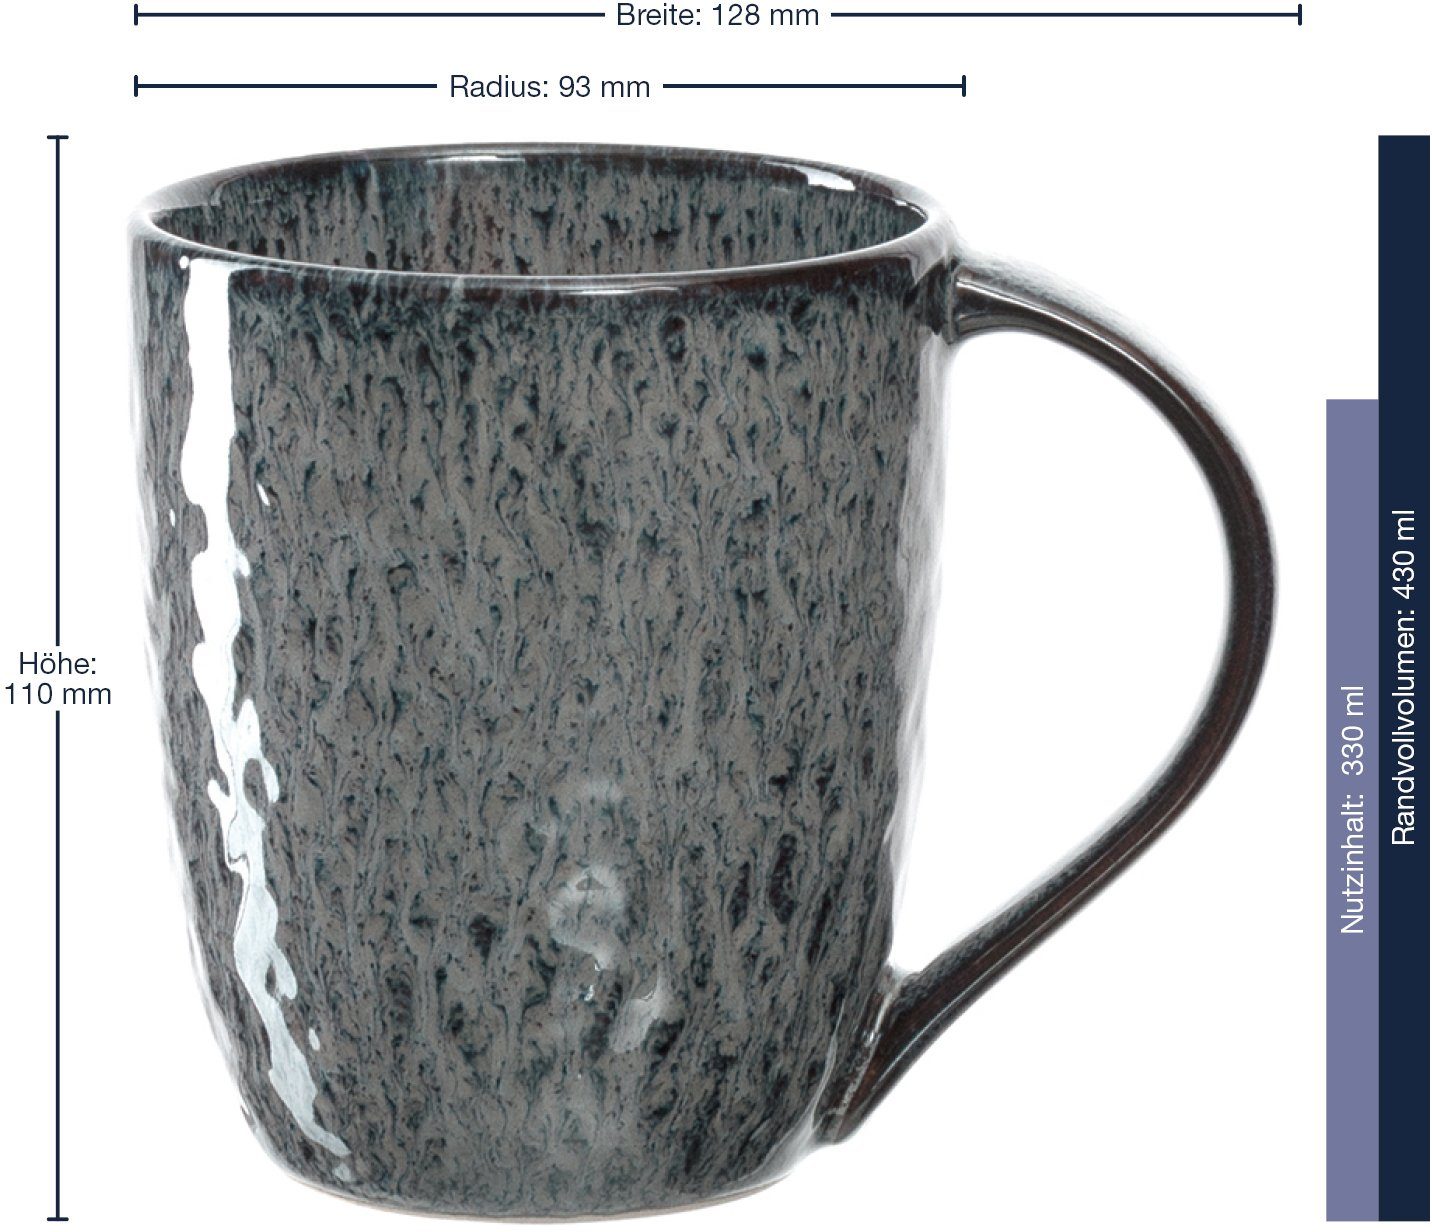 anthrazit Keramik, 6-teilig ml, Matera, Becher 430 LEONARDO